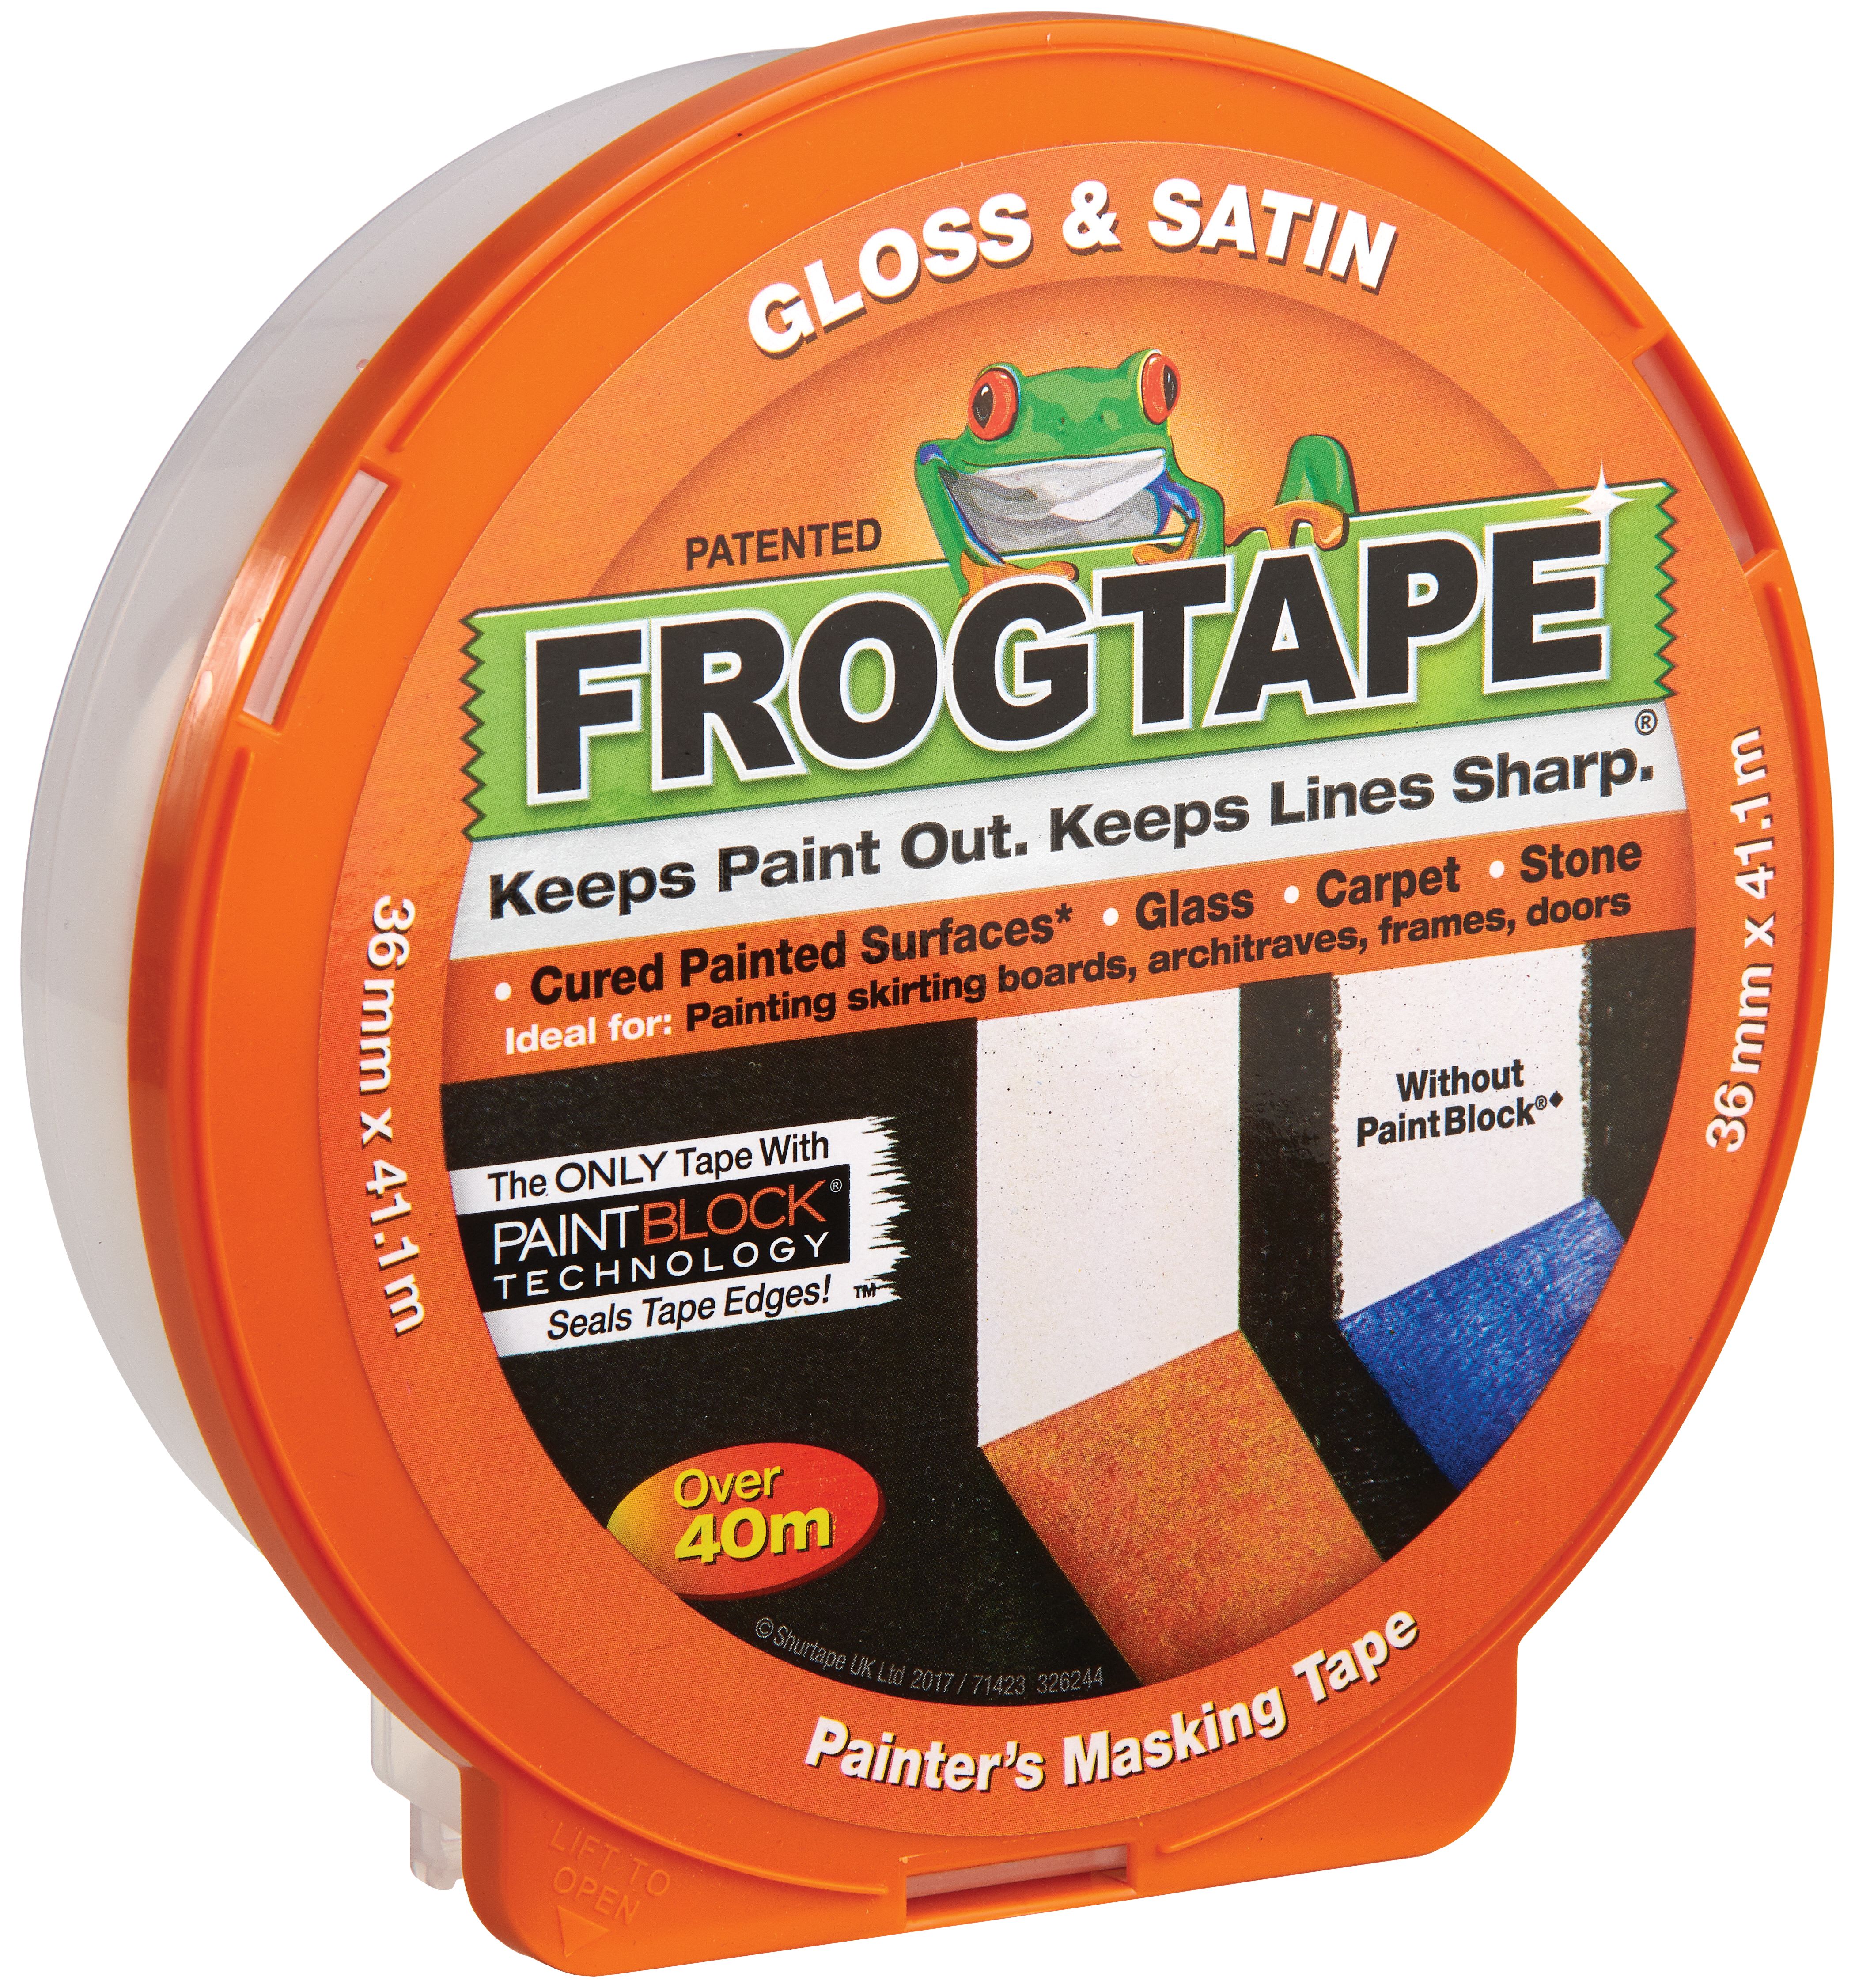 FrogTape Painter's Gloss & Satin Orange Masking Tape